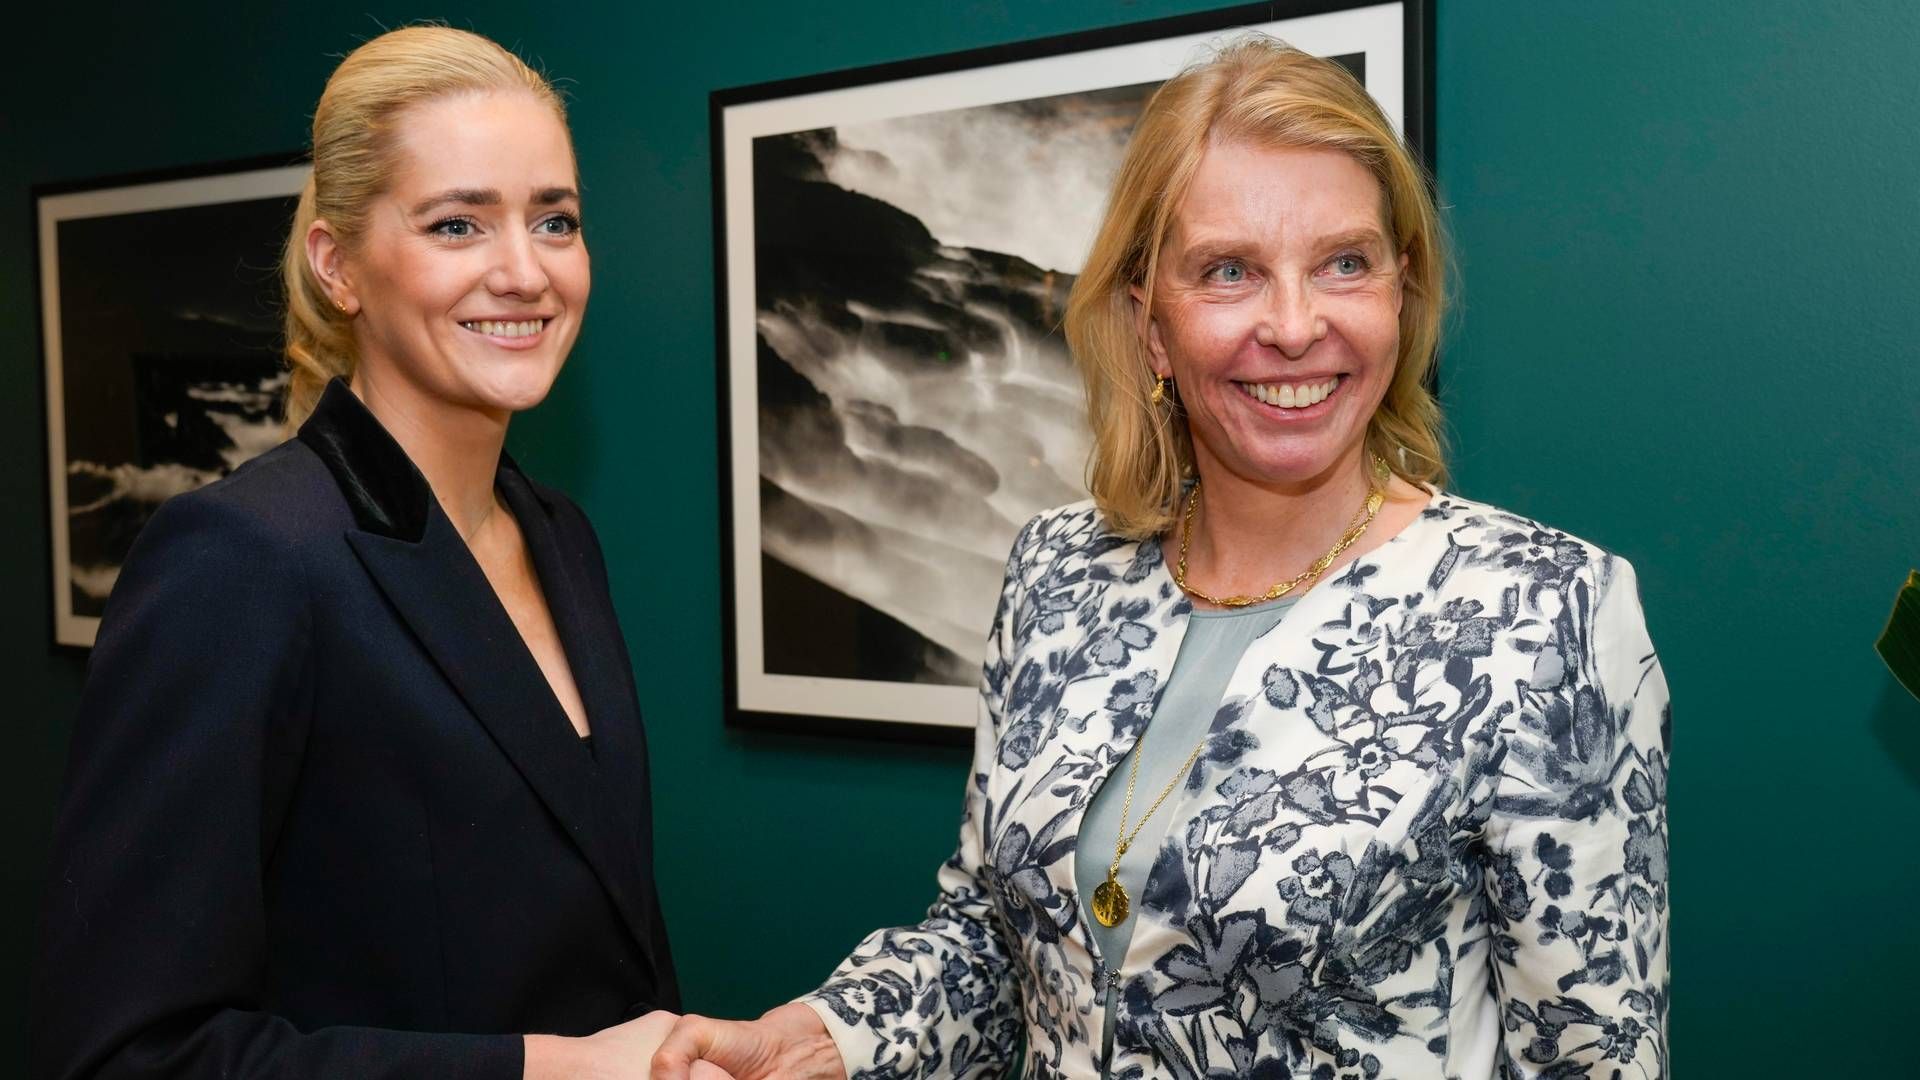 ENIGE: Advokatforeningens leder Siri Teigum (t.h.) og justis- og beredskapsminister Emilie Enger Mehl har signert avtalen. | Foto: Terje Bendiksby / NTB